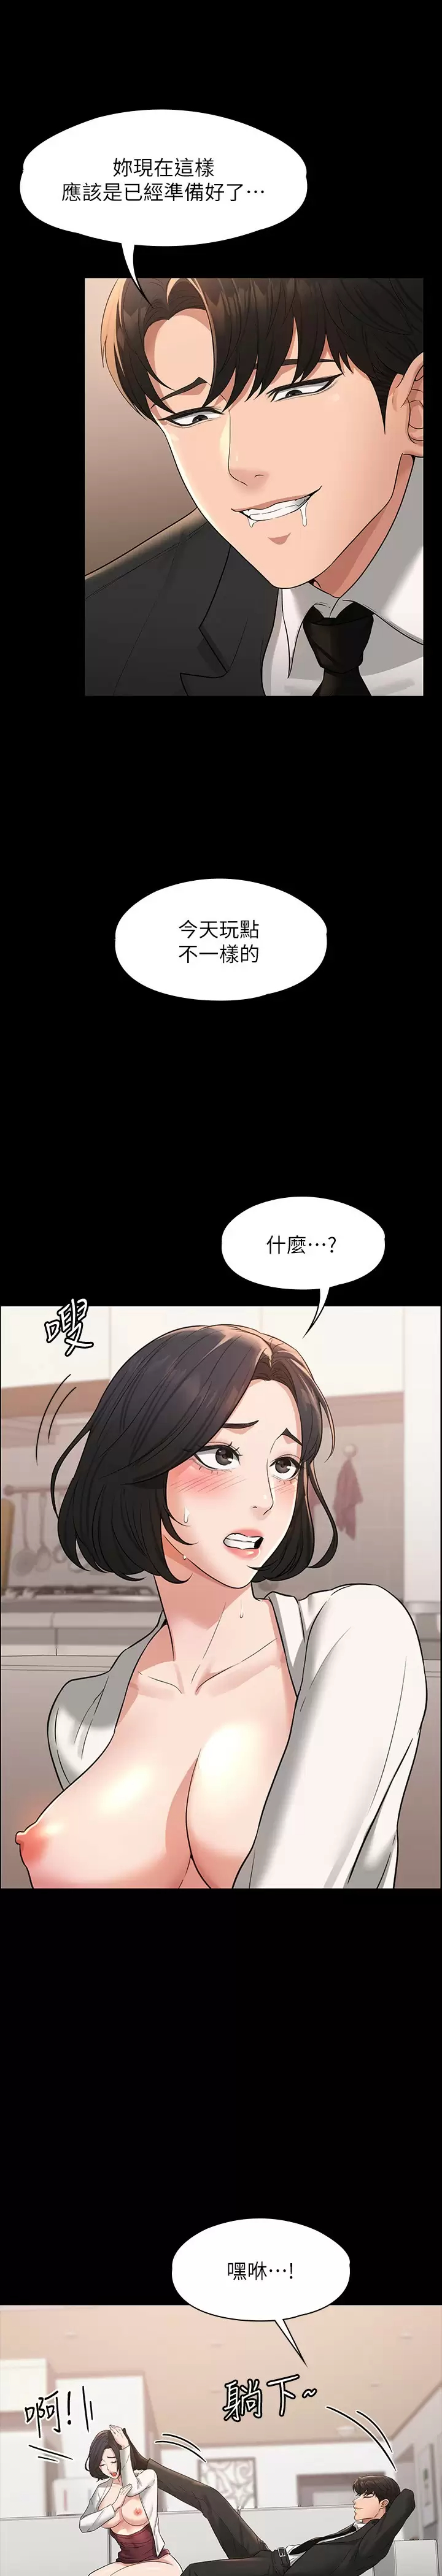 韩国污漫画 超級公務員 第35话 芮雪的胸部袒露无疑 17